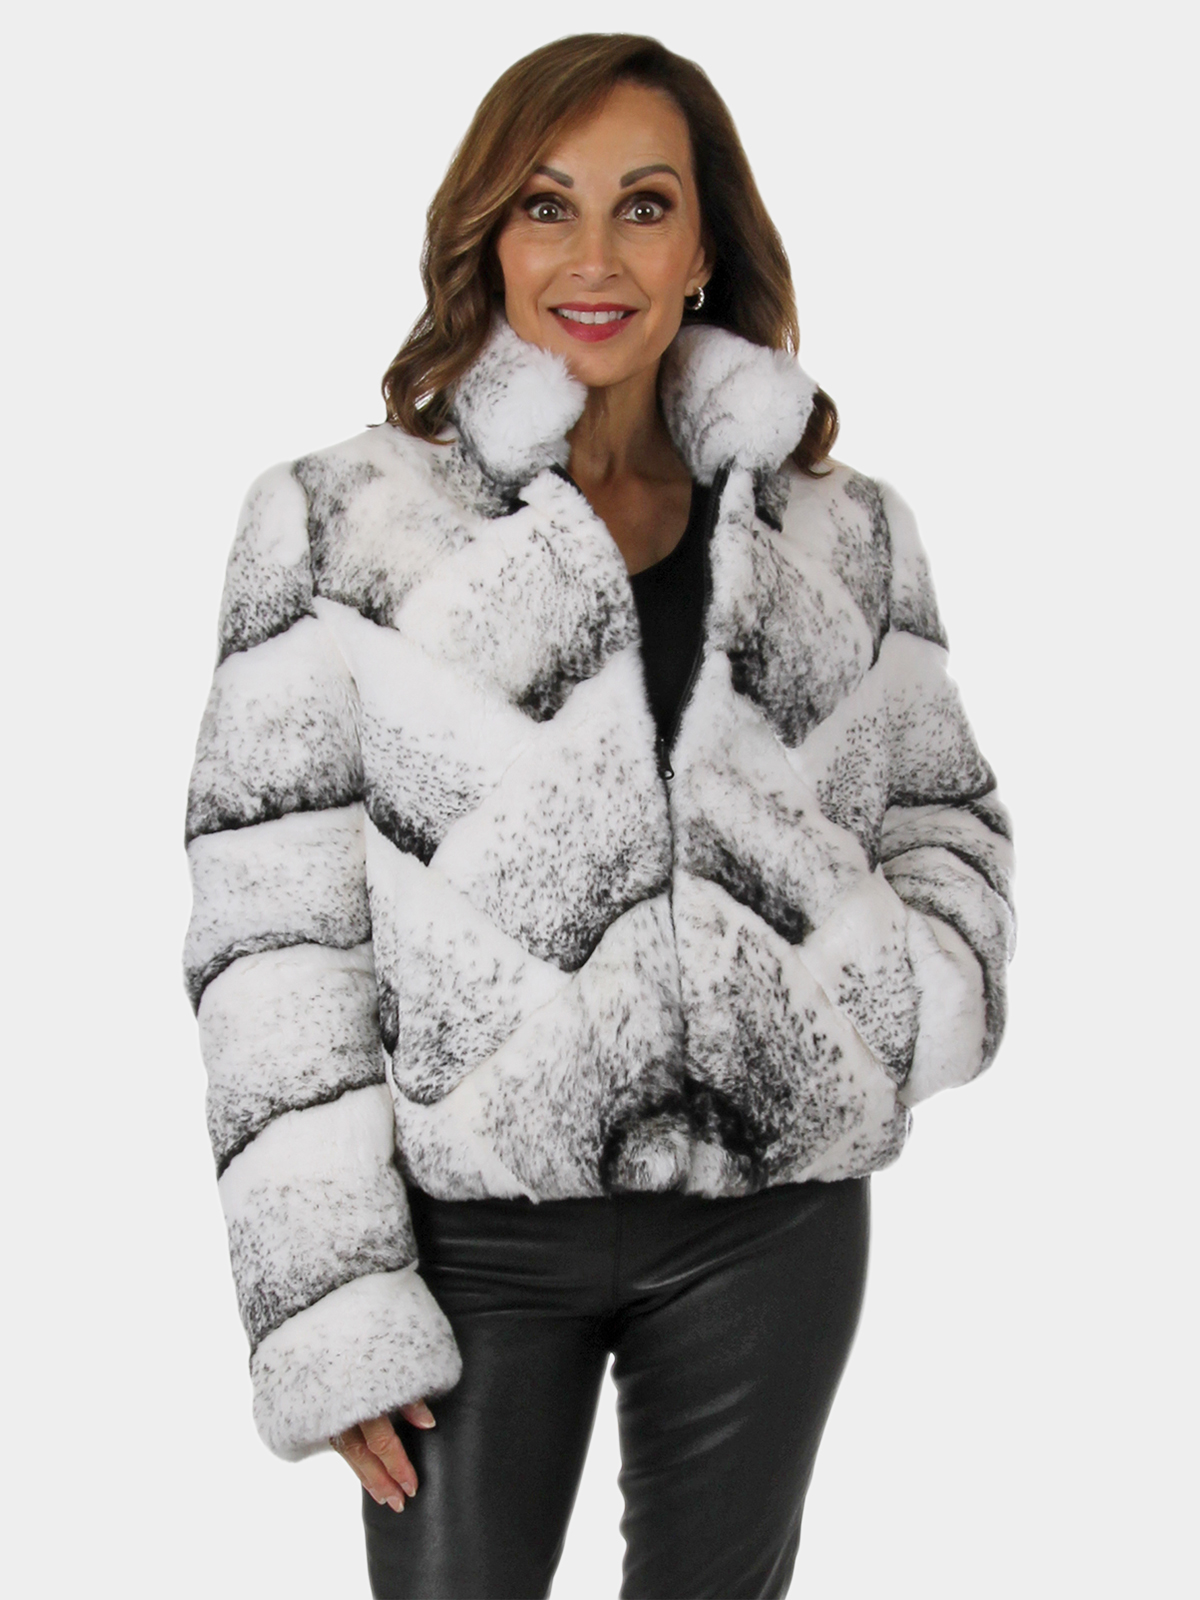 Luxury Women Faux Fox Fur Jacket Coat Winter Outwear Party Fluffy Furry  Fashion | eBay